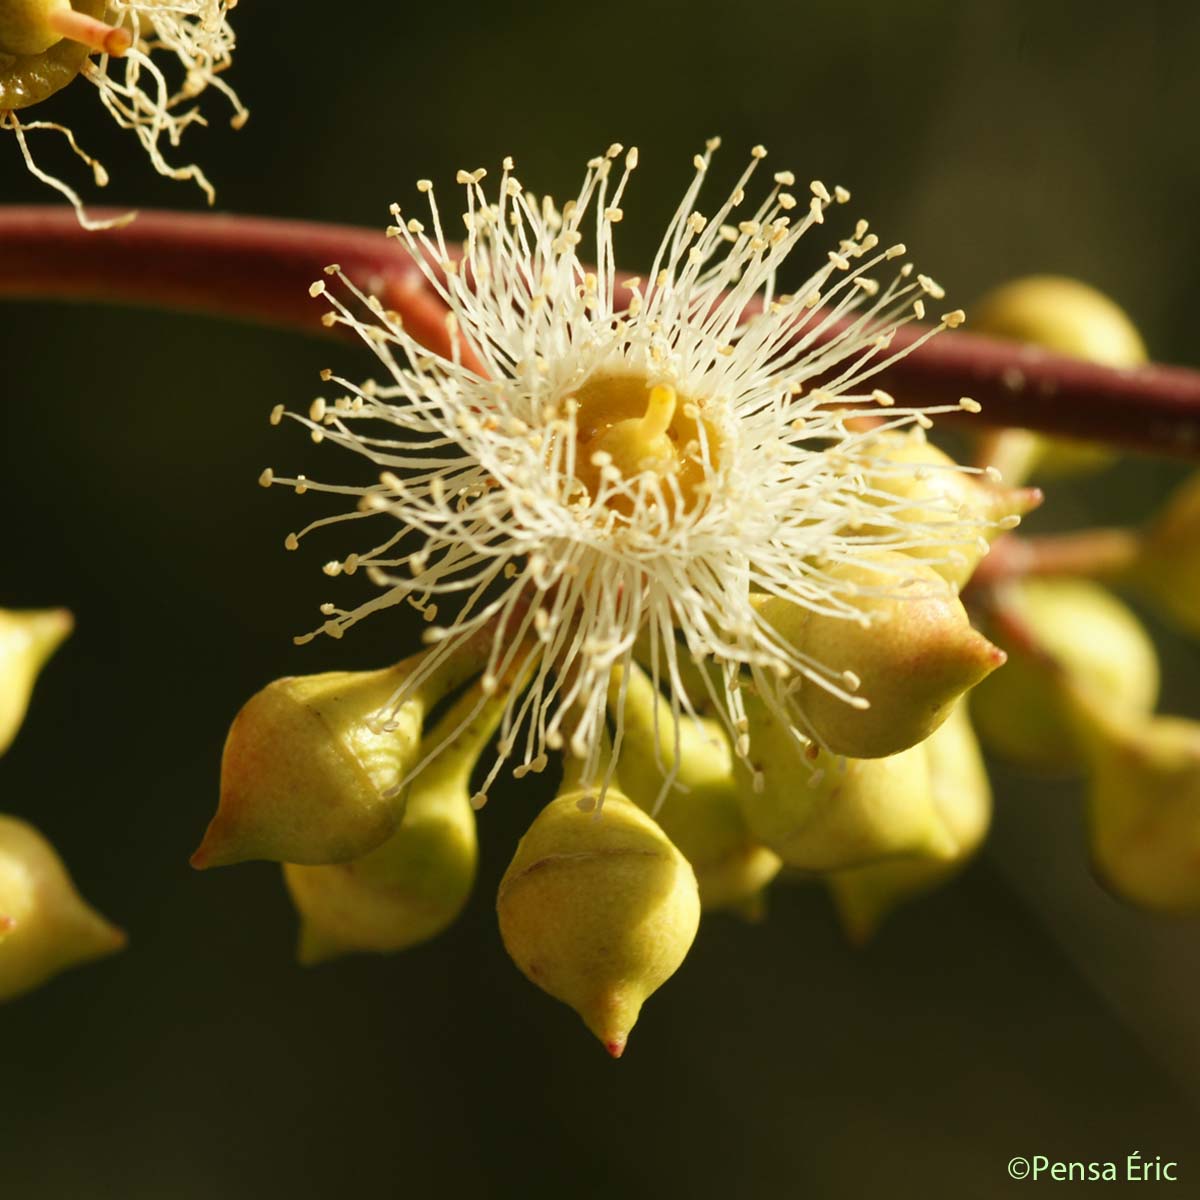 Eucalyptus - Eucalyptus camaldulensis